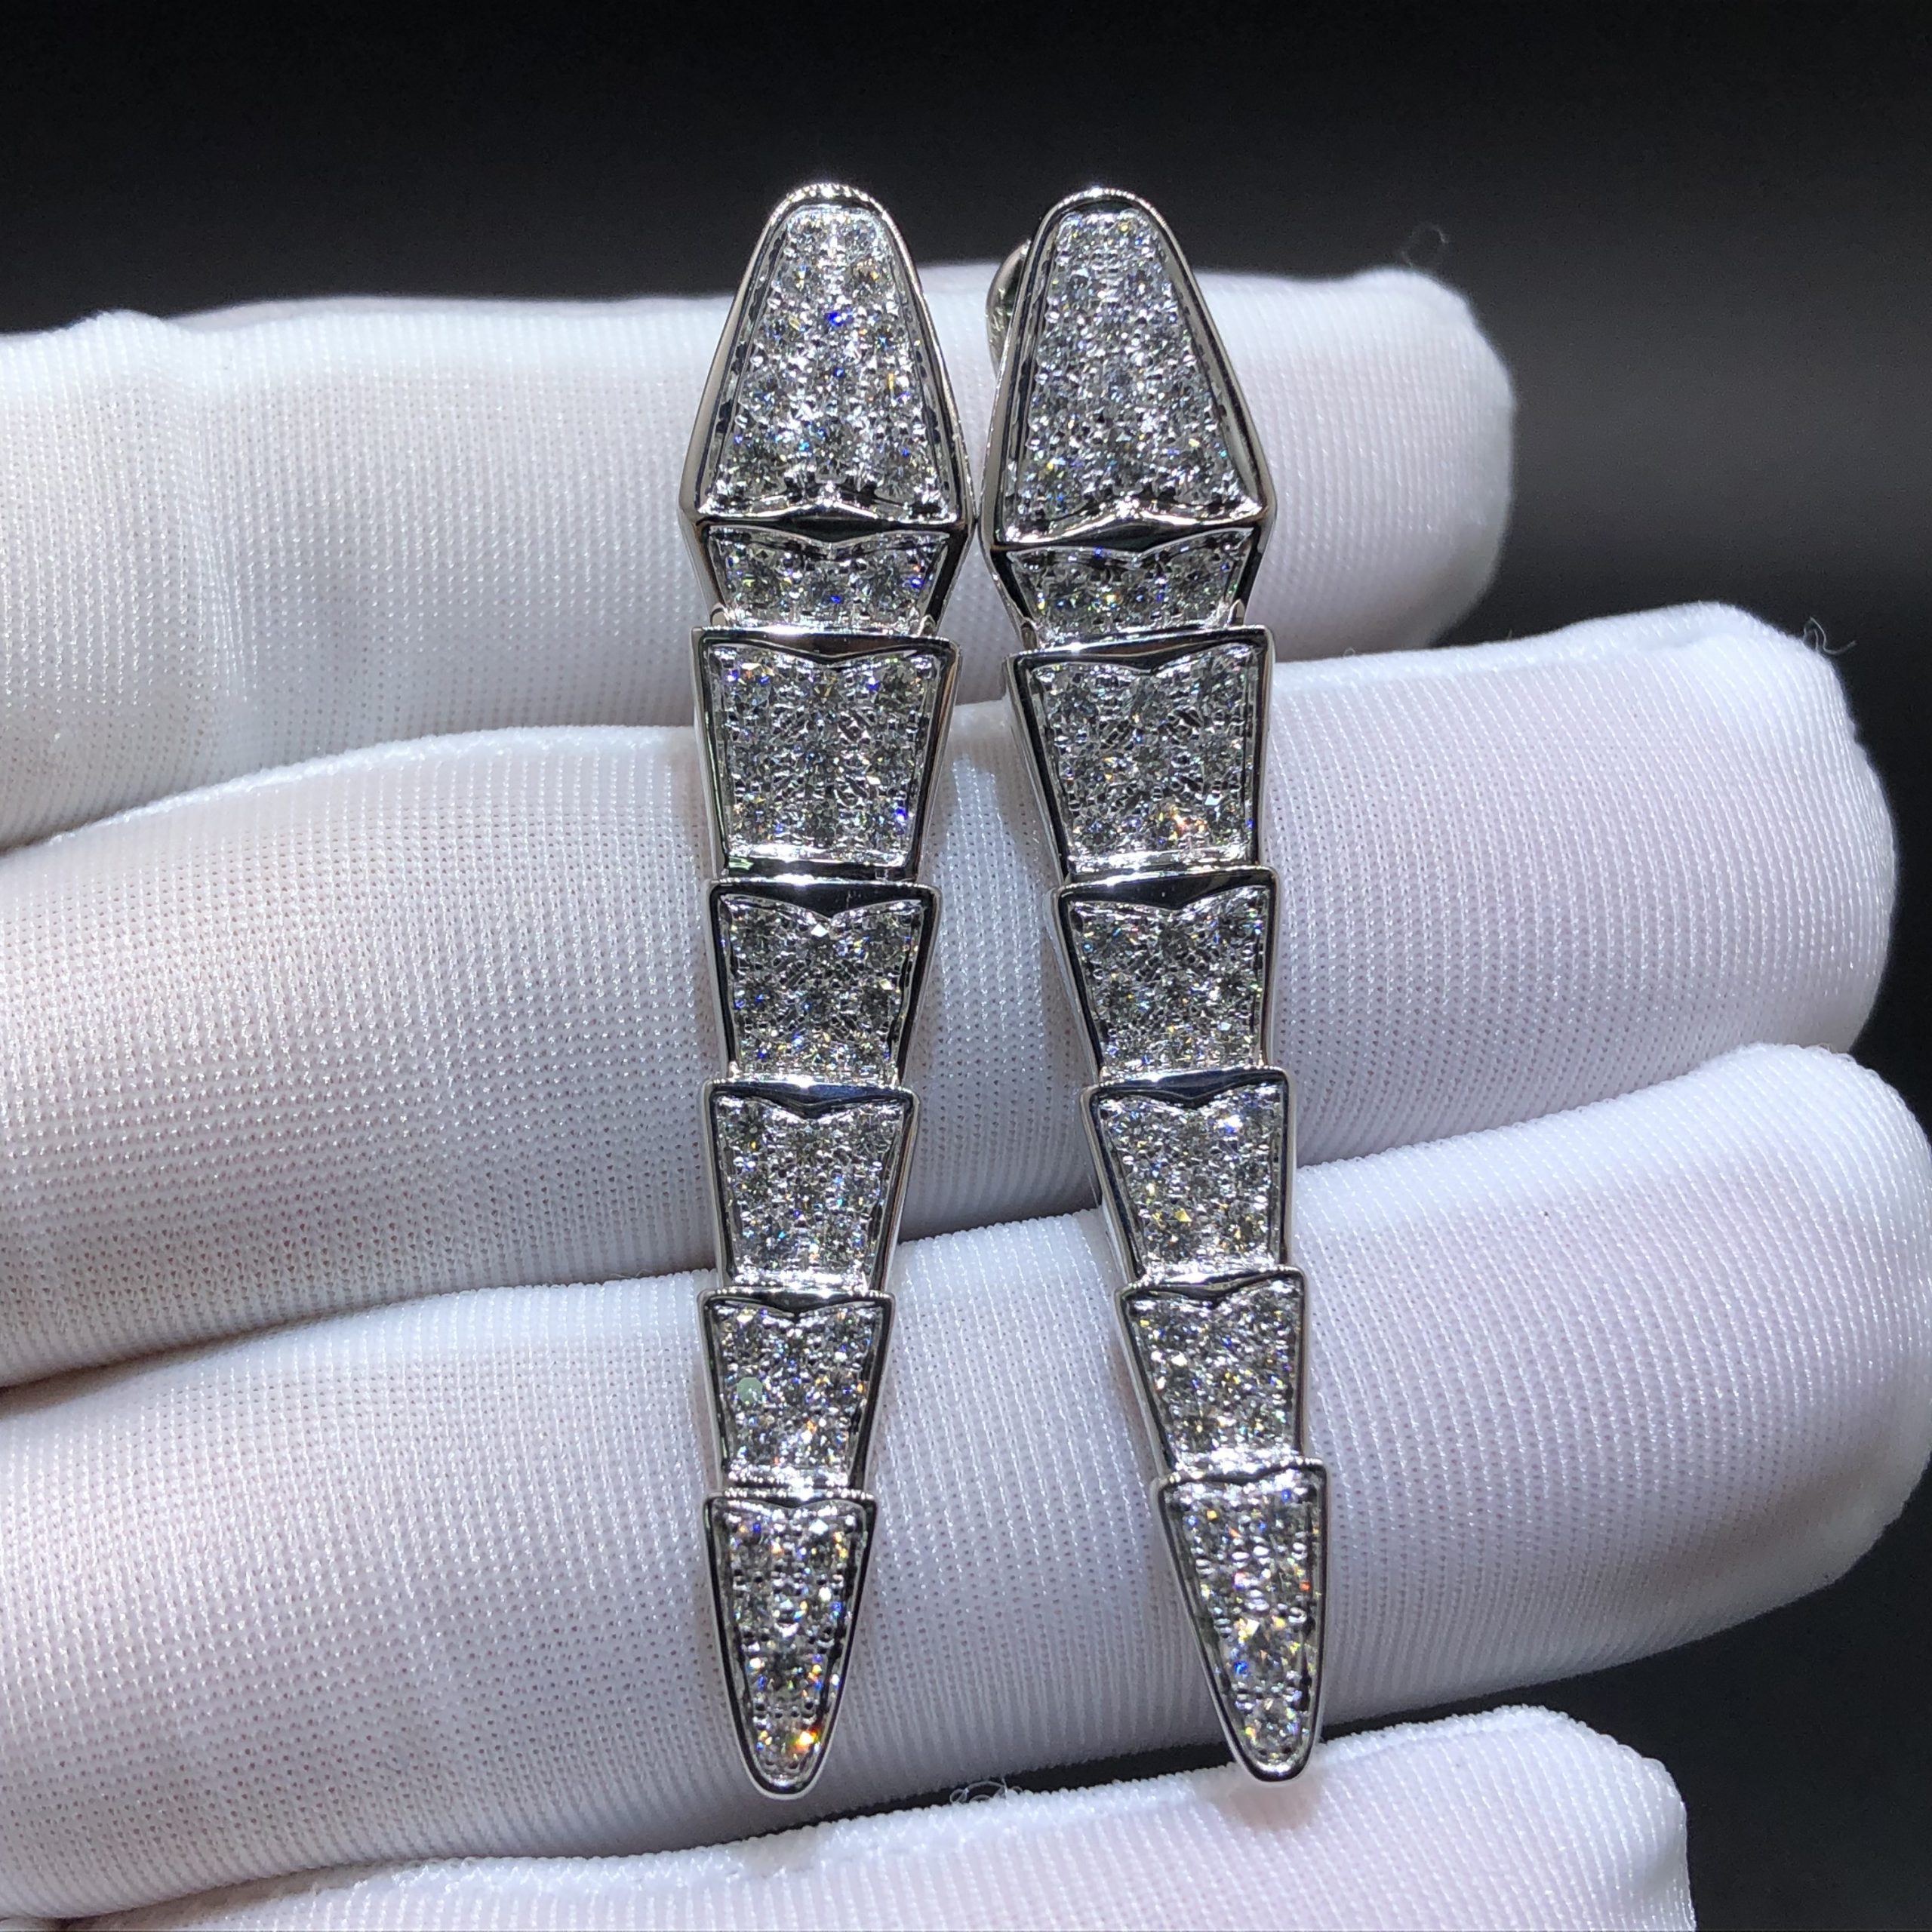 Boucles d'oreilles Bvlgari Serpenti Viper sur mesure en or blanc 18 carats avec pavées de diamants